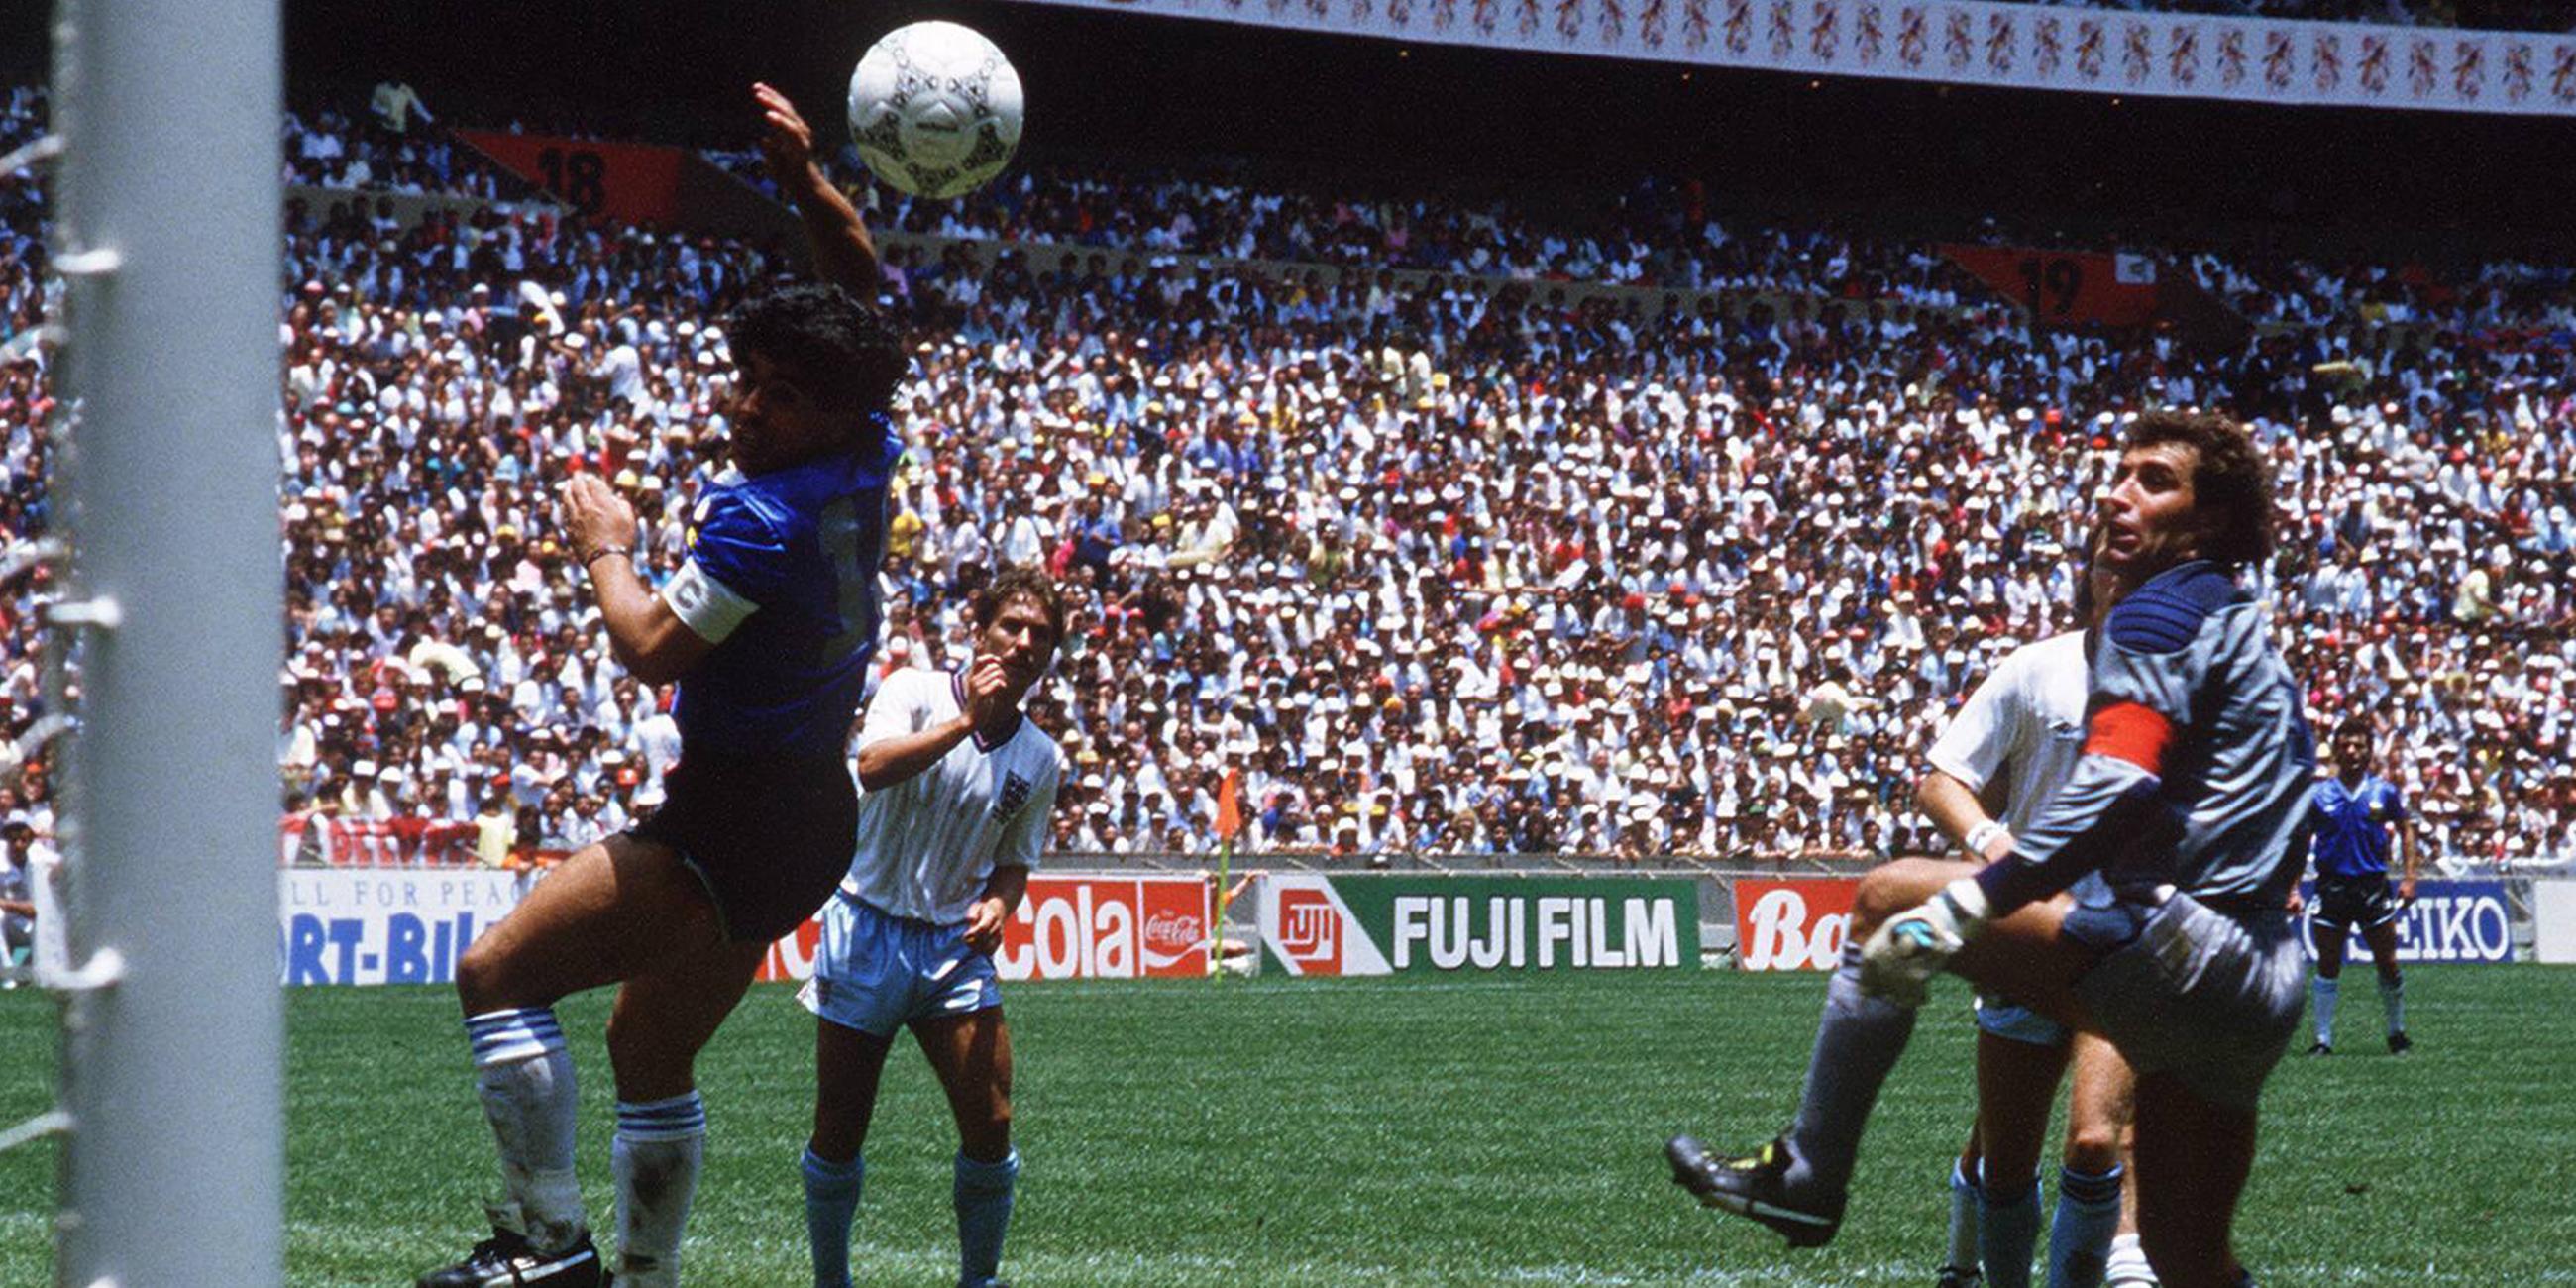 22. Juni 1986, WM-Viertelfinale England - Argentinien in Mexiko-Stadt: Diego Maradona nimmt bei seinem Tor zum 1:0 die Hand zu Hilfe - und England verliert gegen den späteren Weltmeister am Ende 1:2.